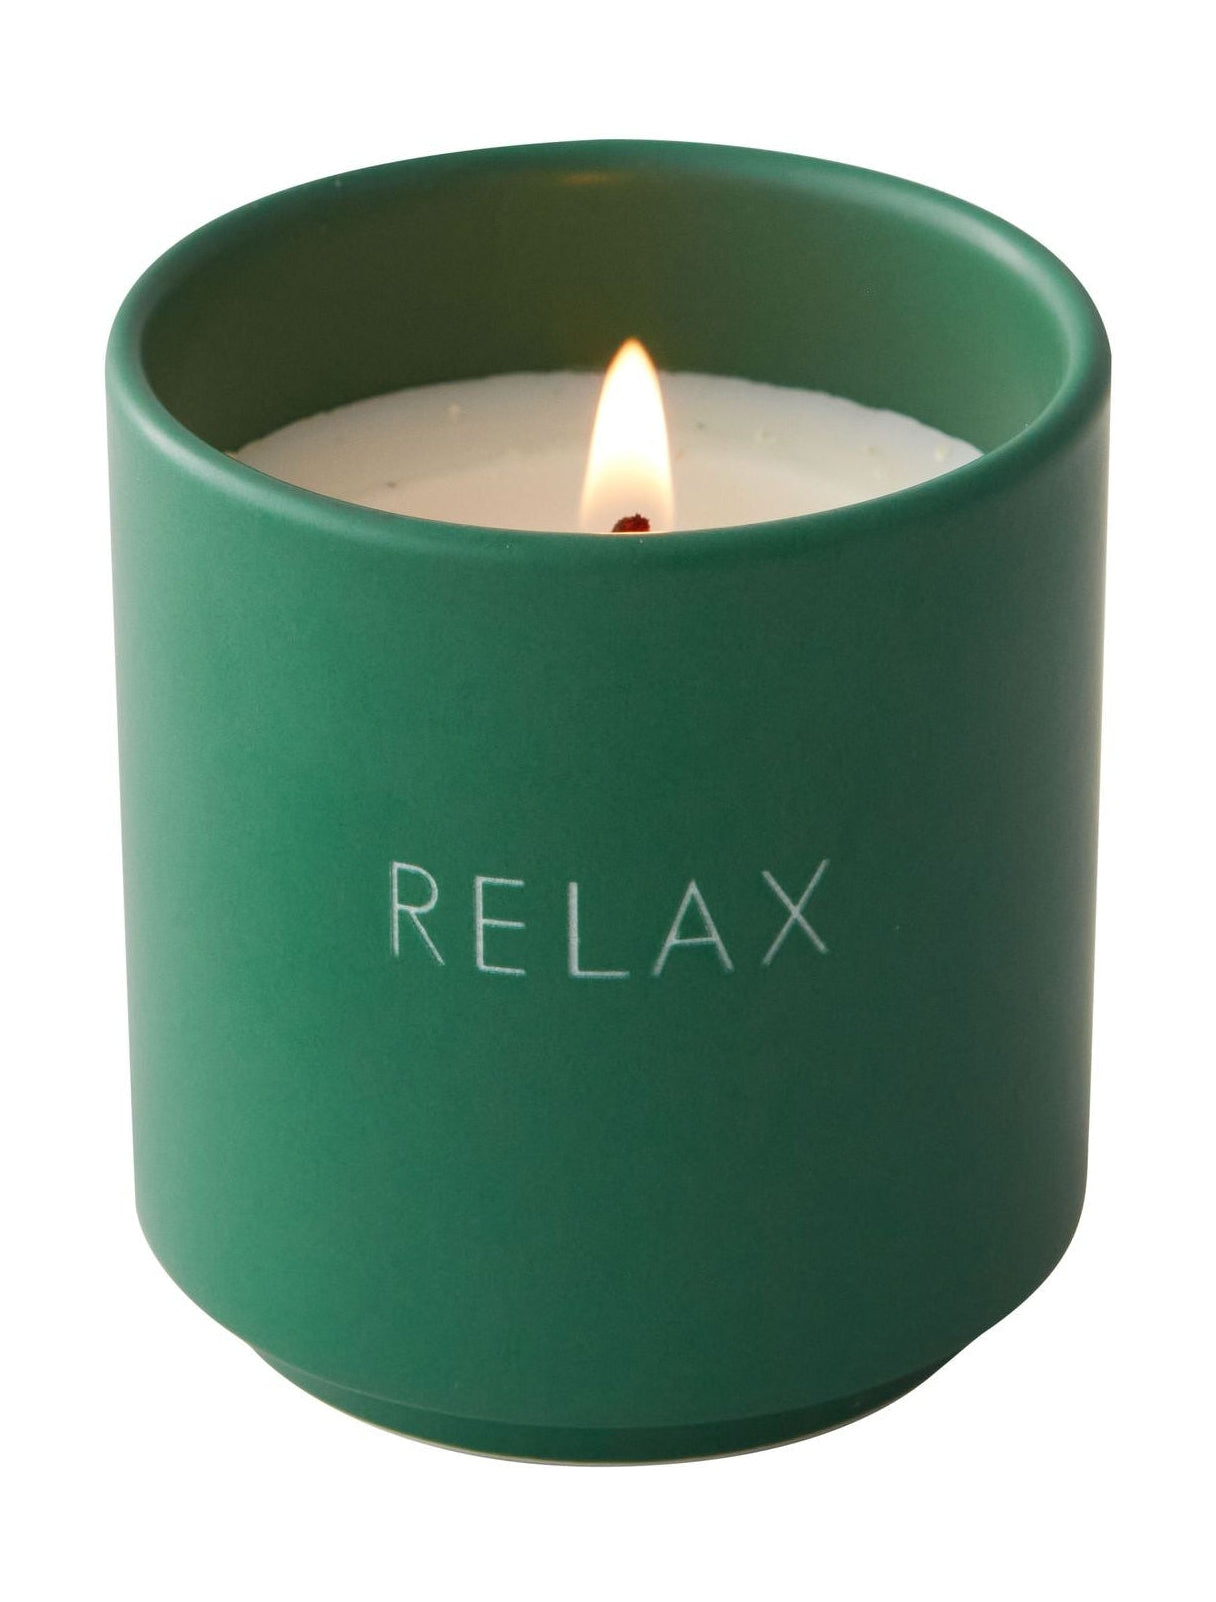 Design písmen vonící svíčka relaxovat, tráva zelená